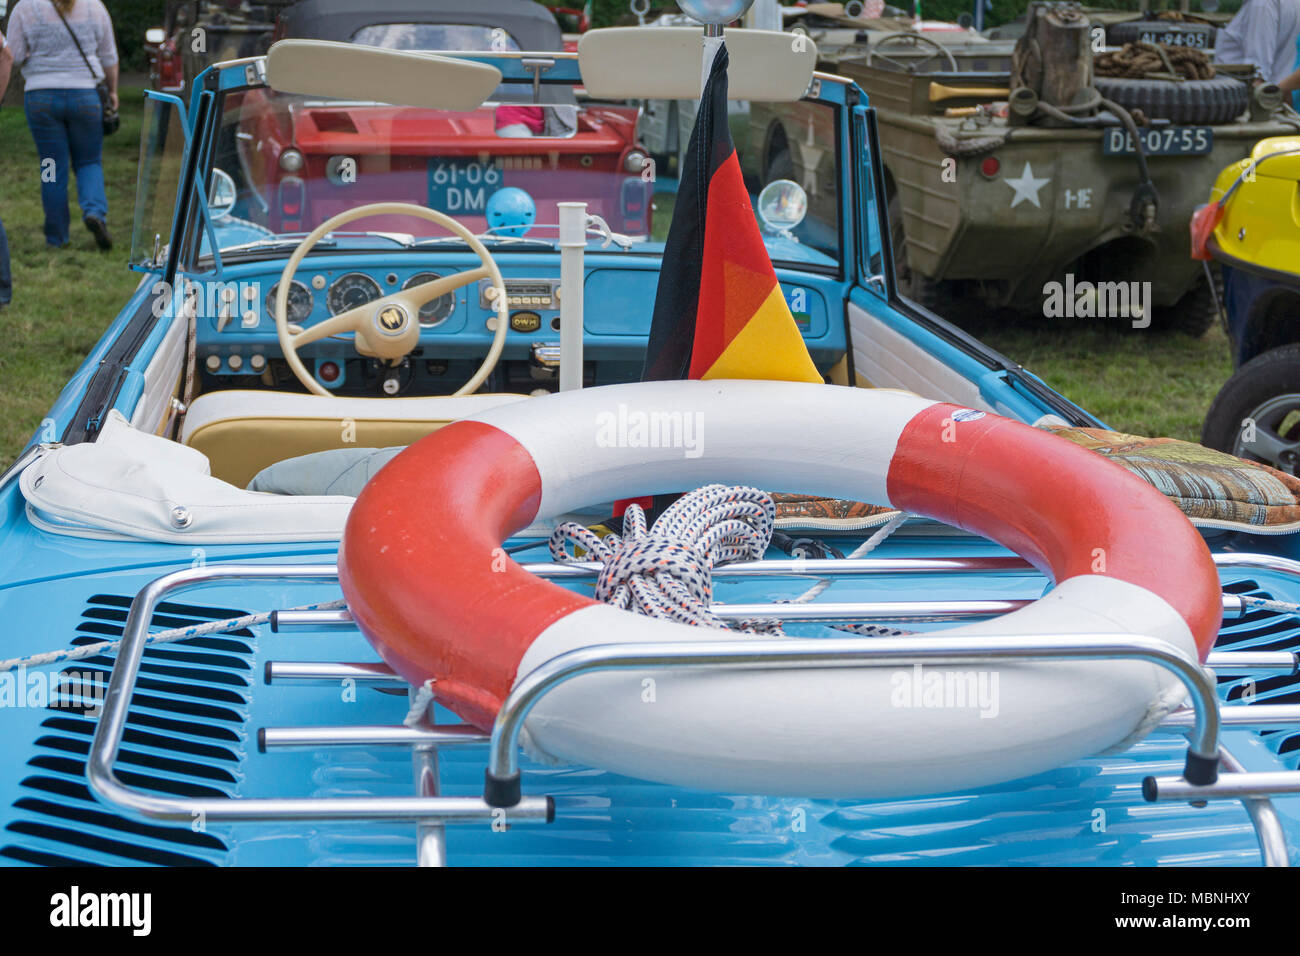 Amphicar, amphibious vehicle exhibition at Moselle river, Neumagen-Dhron, Rhineland-Palatinate, Germany Stock Photo